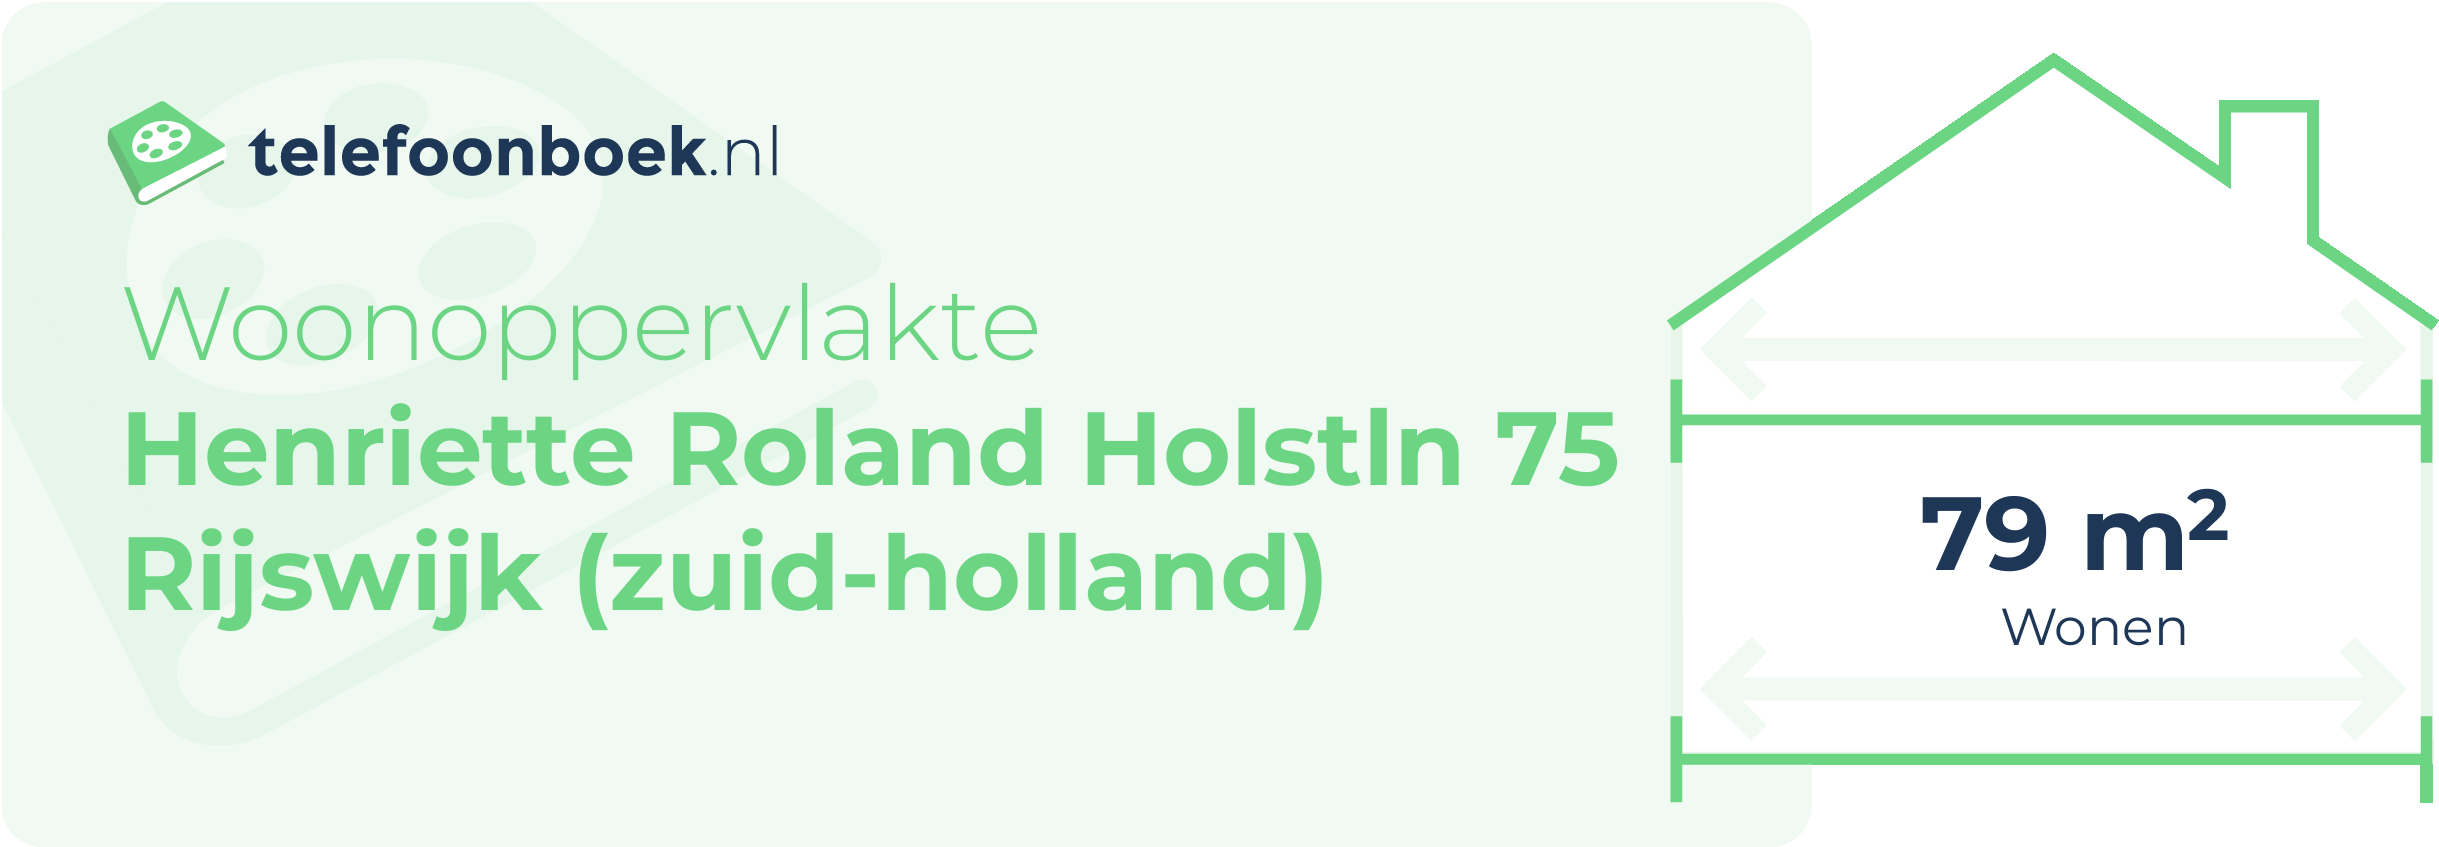 Woonoppervlakte Henriette Roland Holstln 75 Rijswijk (Zuid-Holland)